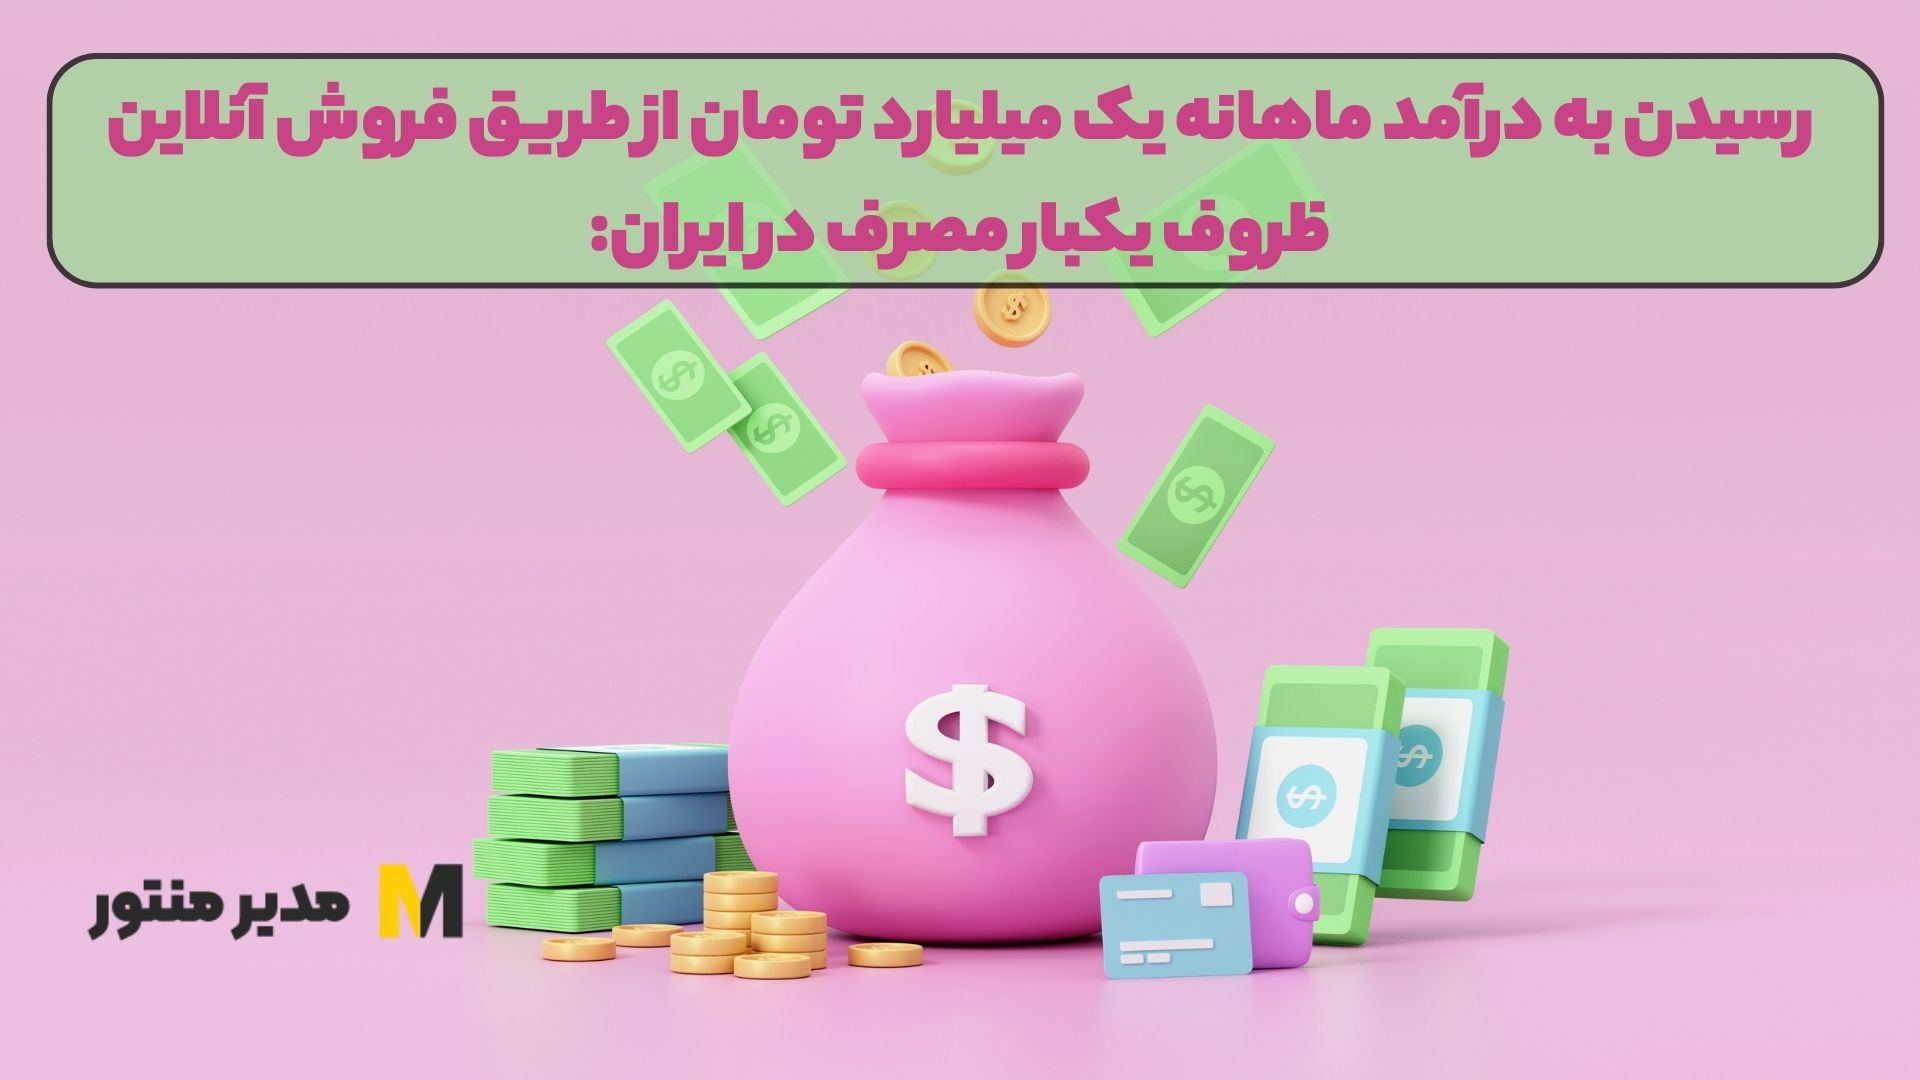 رسیدن به درآمد ماهانه یک میلیارد تومان از طریق فروش آنلاین ظروف یکبار مصرف در ایران: